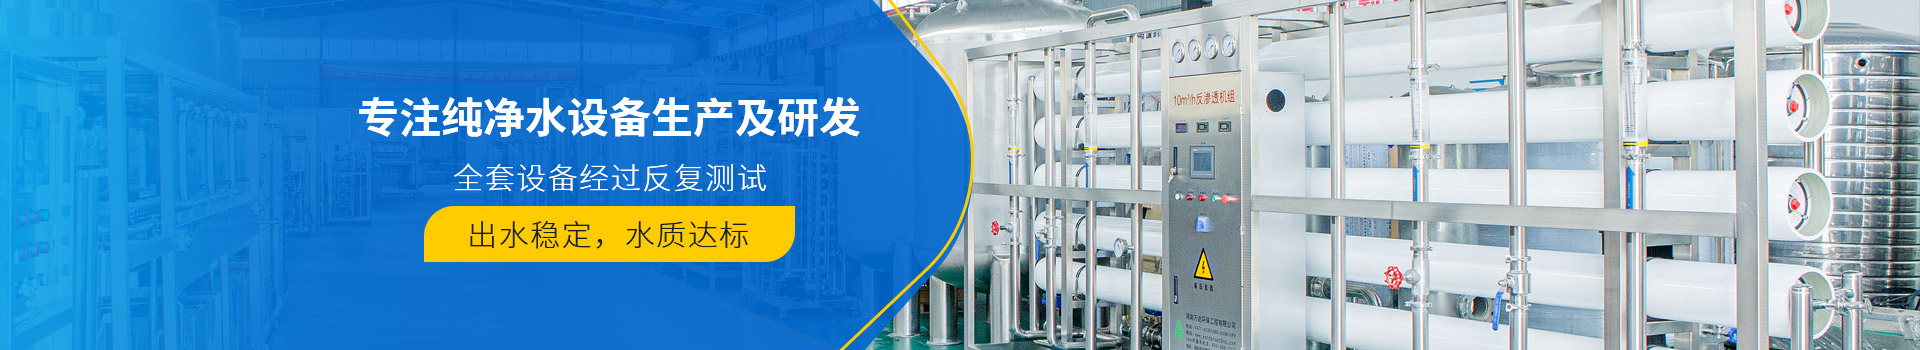 武汉川谷环保科技有限公司产品展示-武汉纯水设备厂家 (PC+WAP)-纯净水设备生产销售